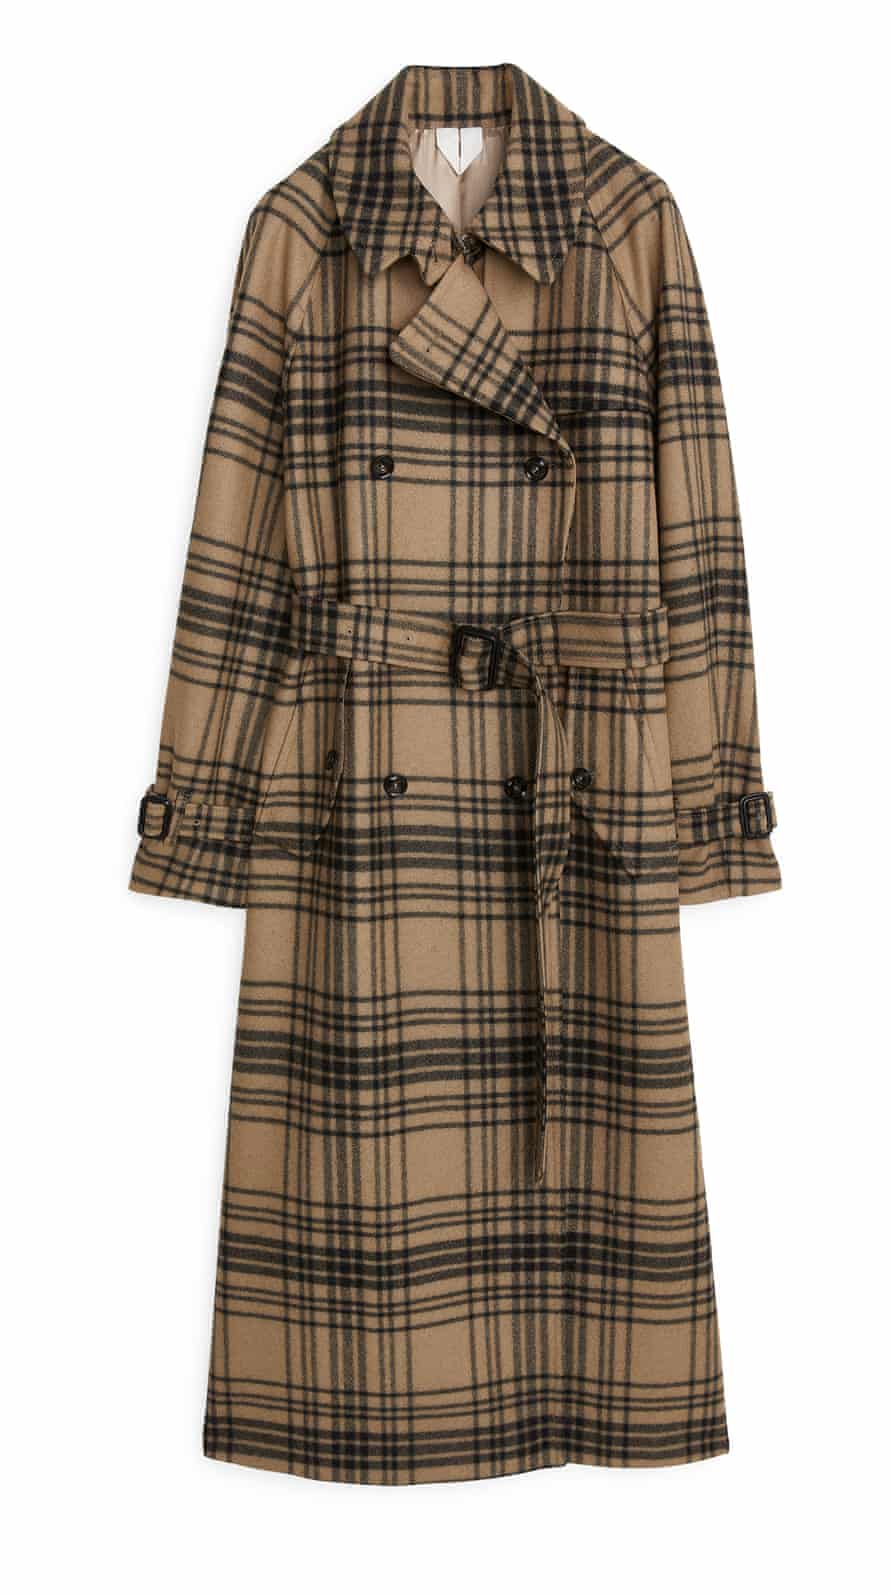 Arket coat, £250.